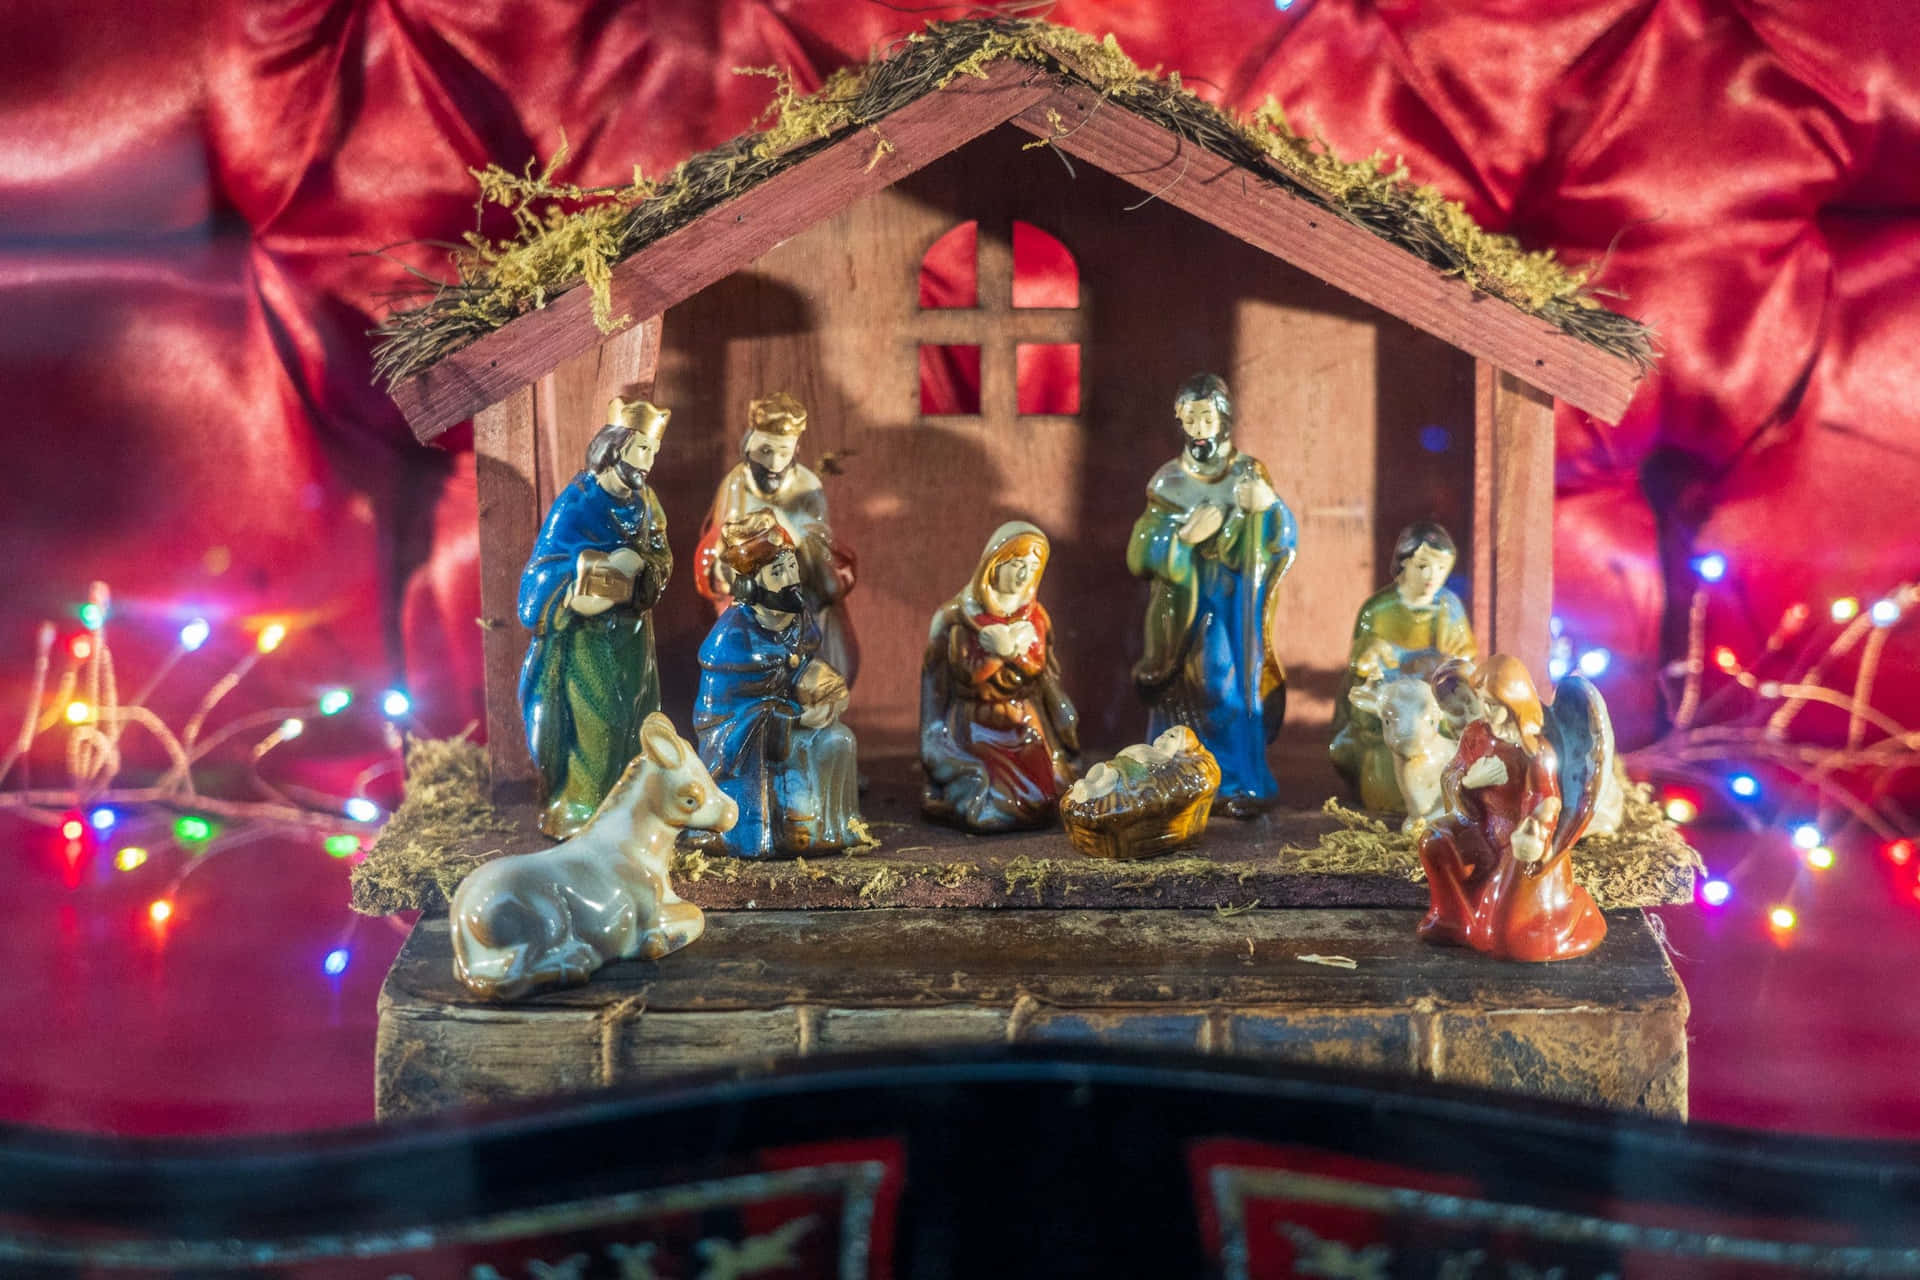 Comemorandoo Nascimento De Jesus: Uma Tradicional Cena De Natal.